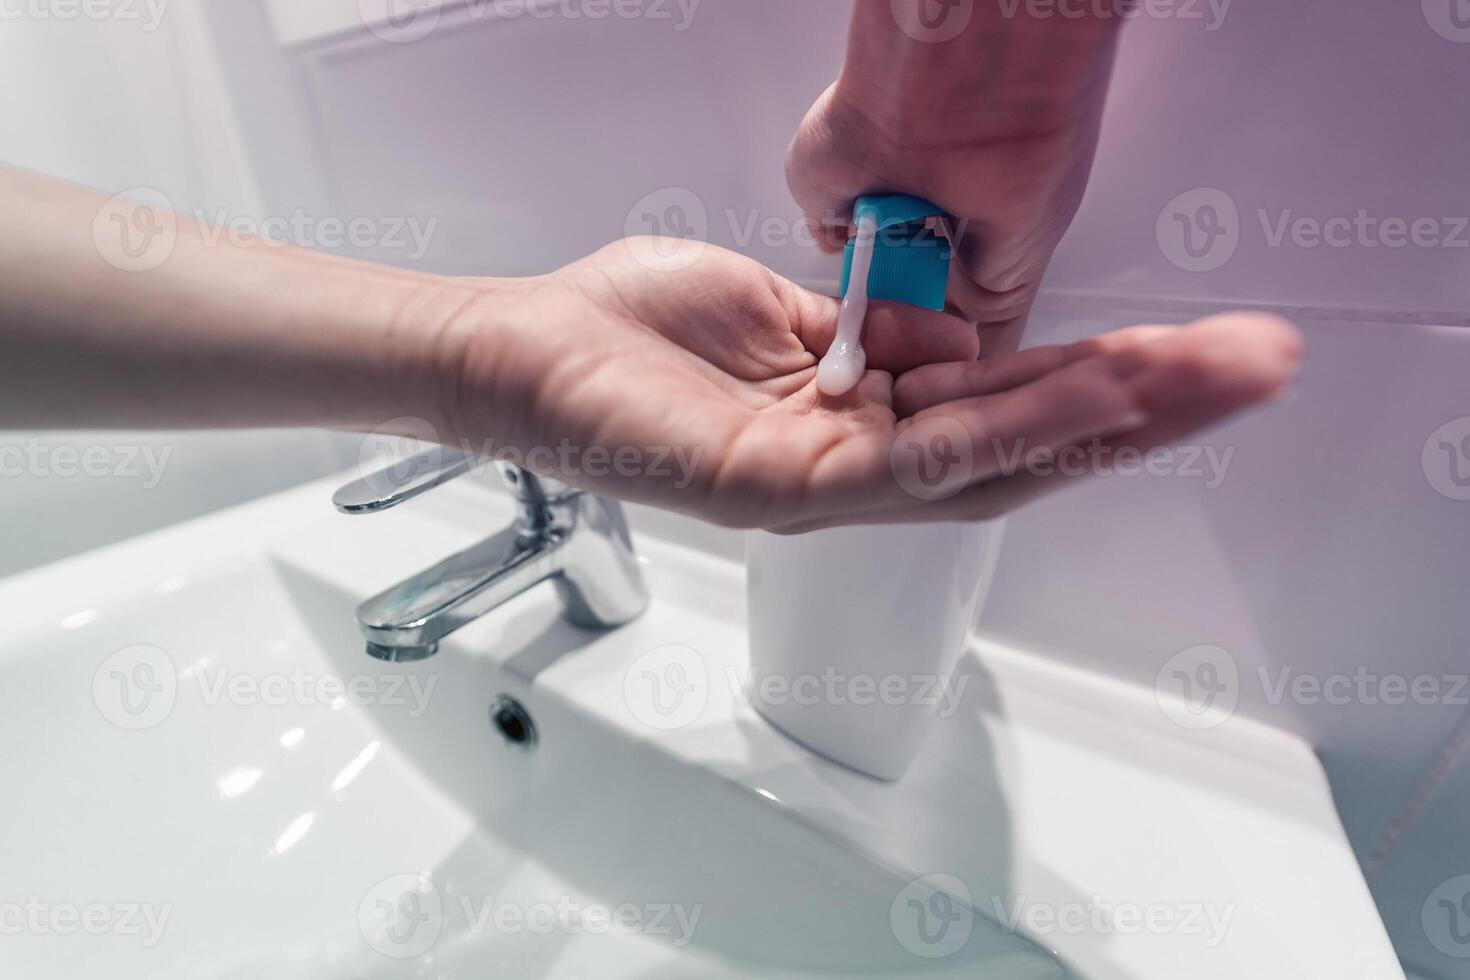 hembra Lavado manos con líquido jabón para prevenir y detener corona virus extensión - higiene y cuidado de la salud personas concepto foto